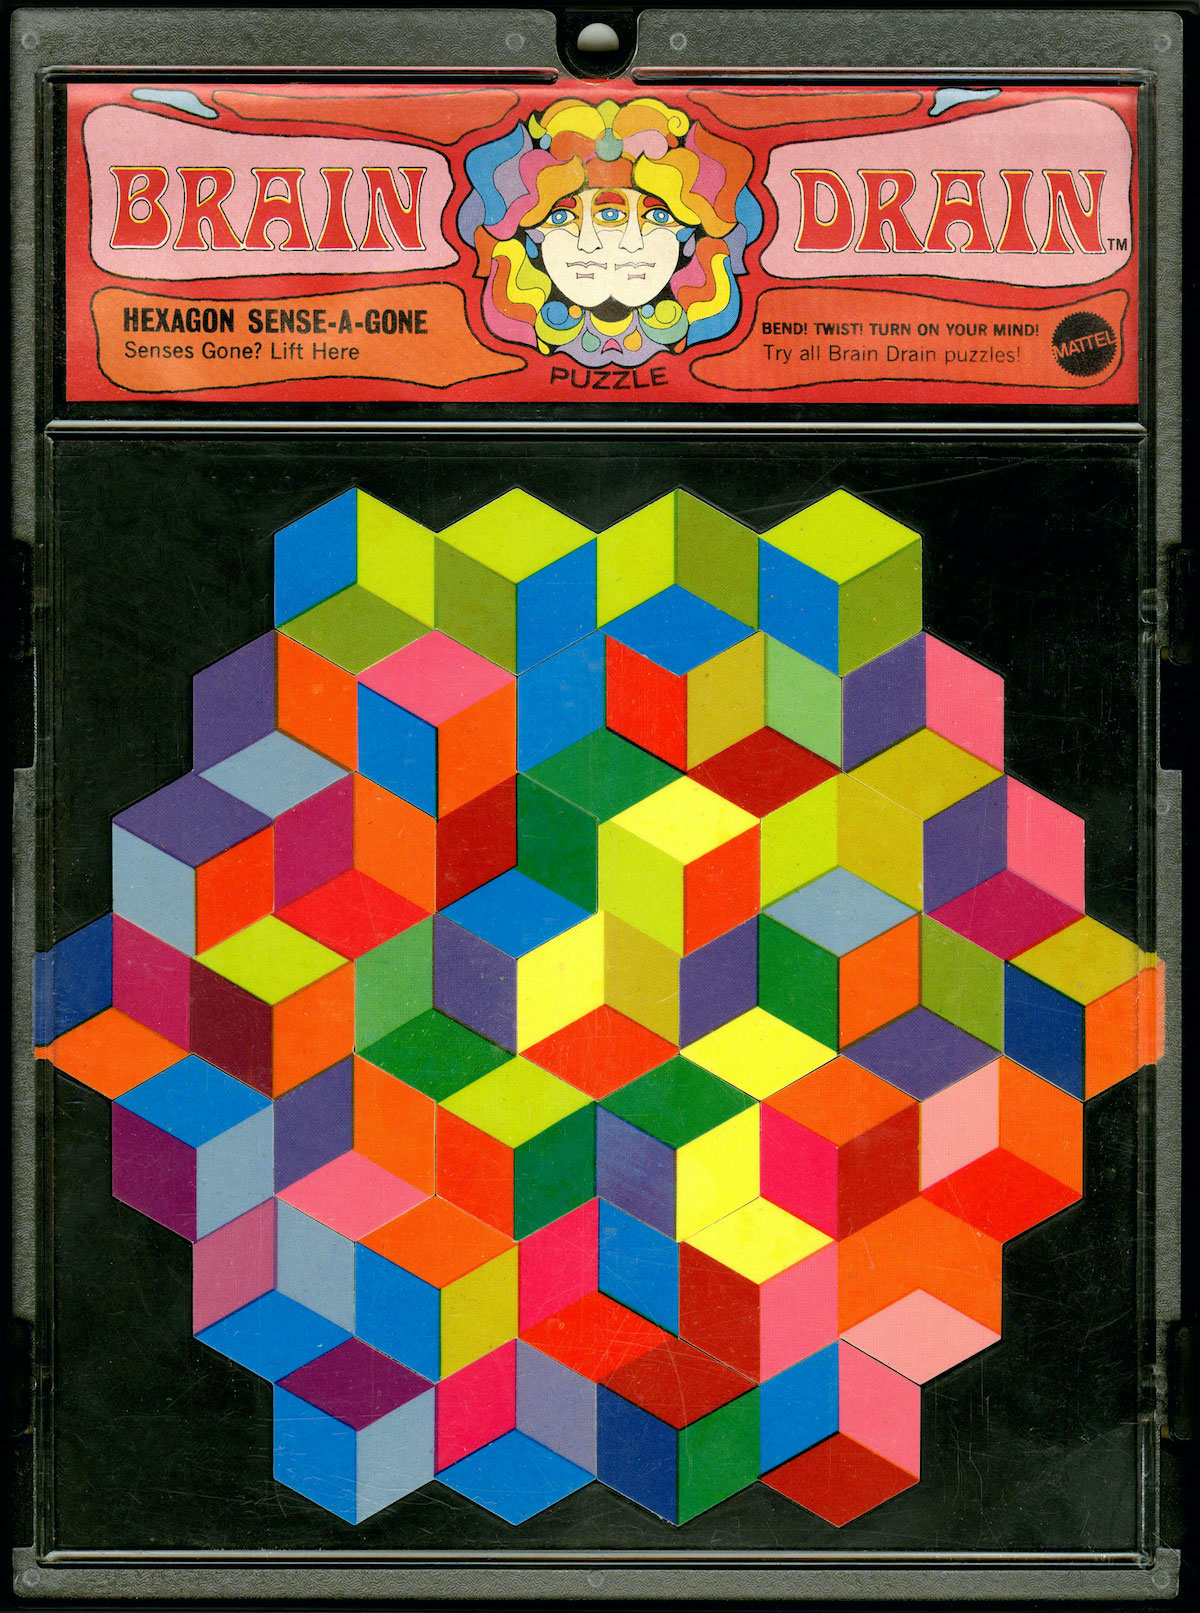 Blend! Twist! Turn on your mind!” Brain Drain puzzles by Mattell, 1969. -  Flashbak